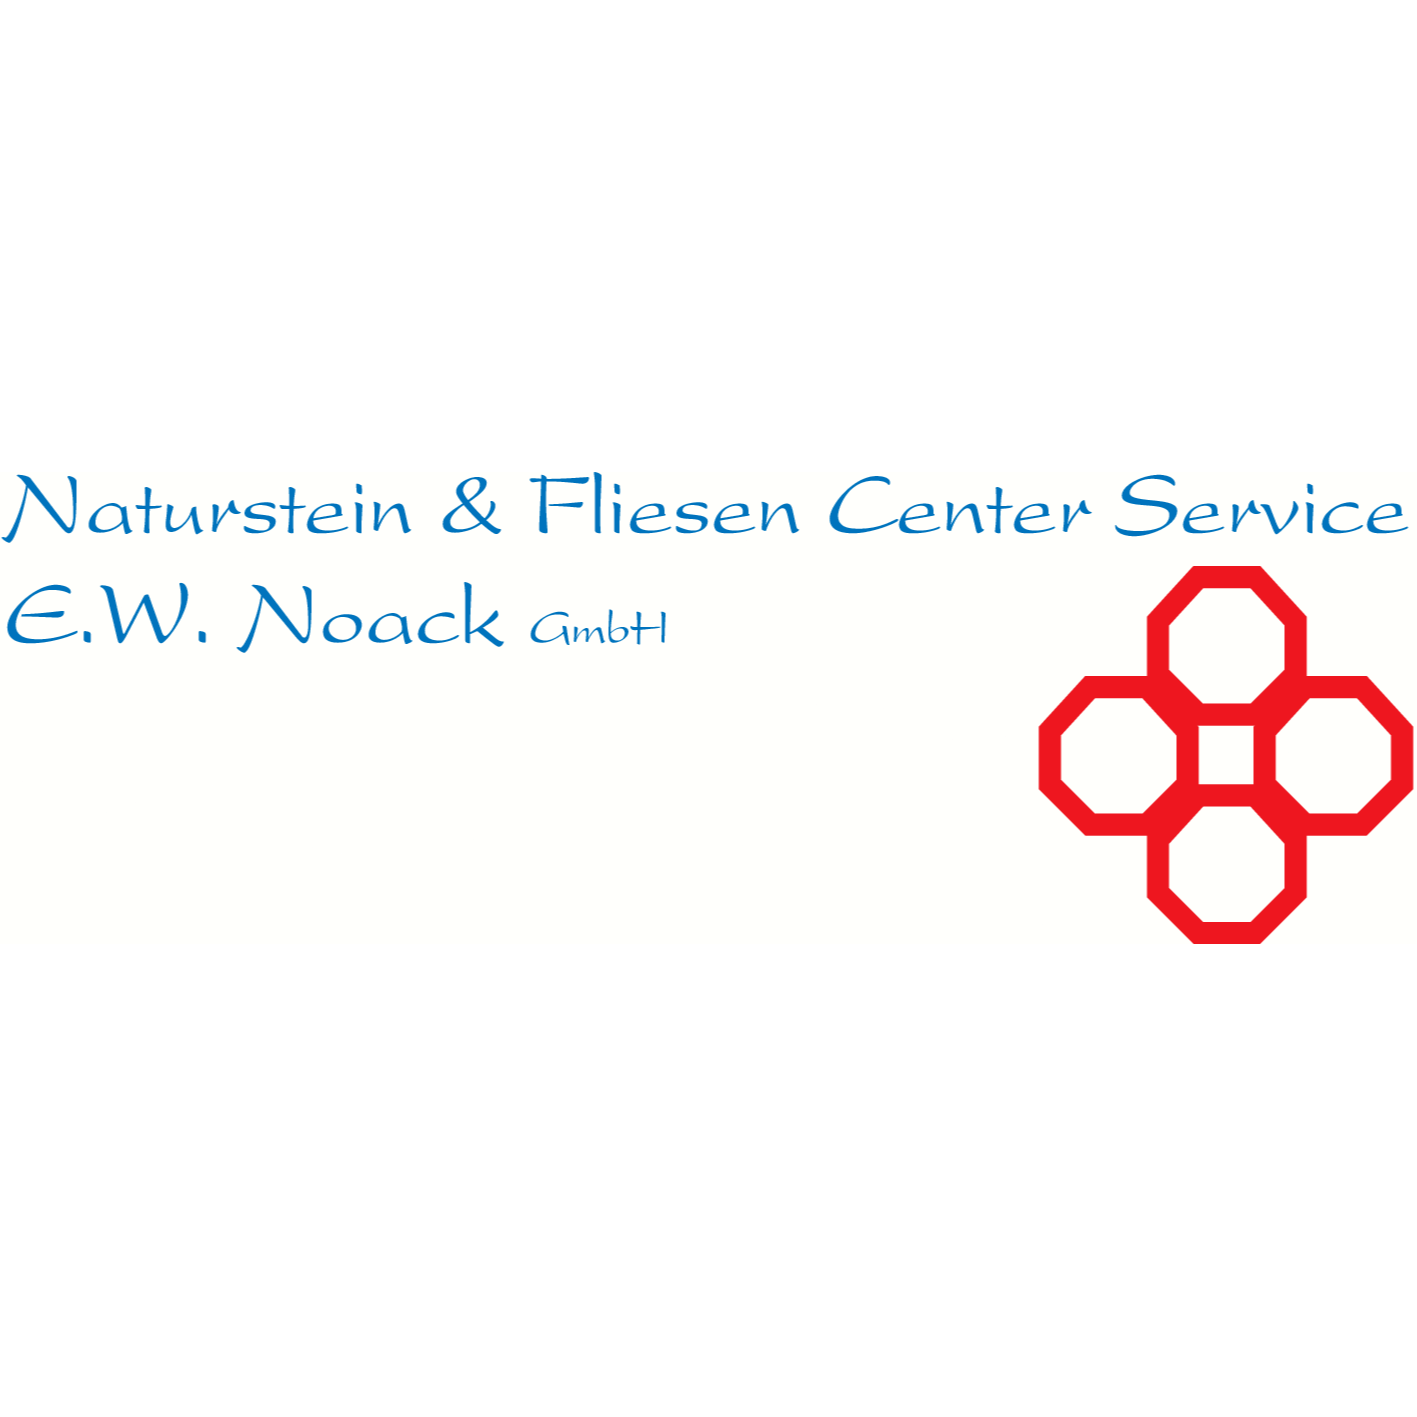 Naturstein & Fliesen Center Service E.W. Noack GmbH in Bitterfeld Wolfen - Logo